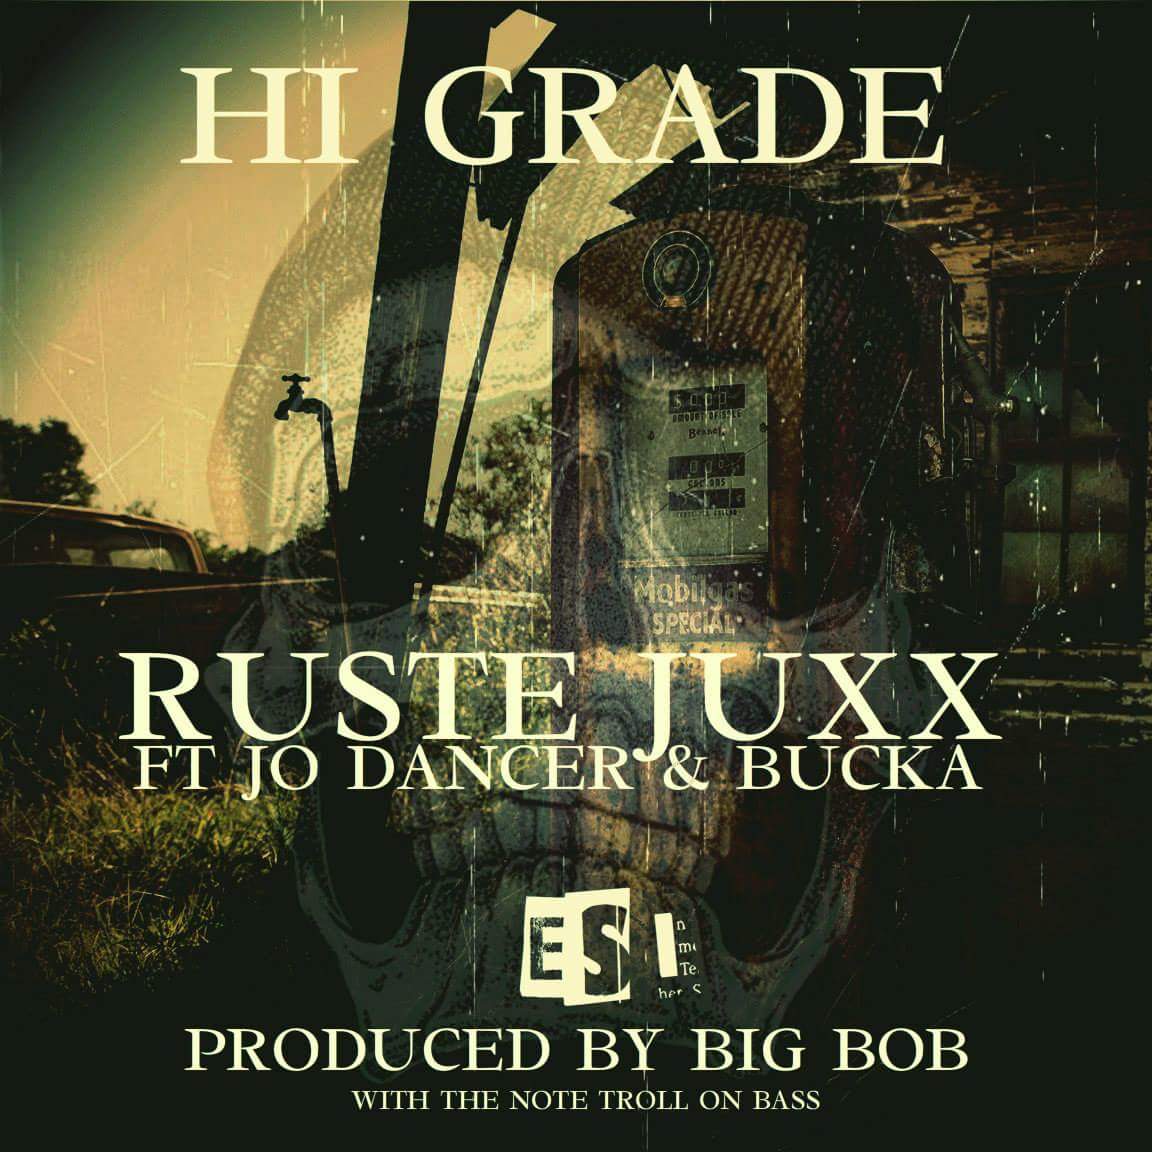 Ruste Juxx - "Hi Grade"